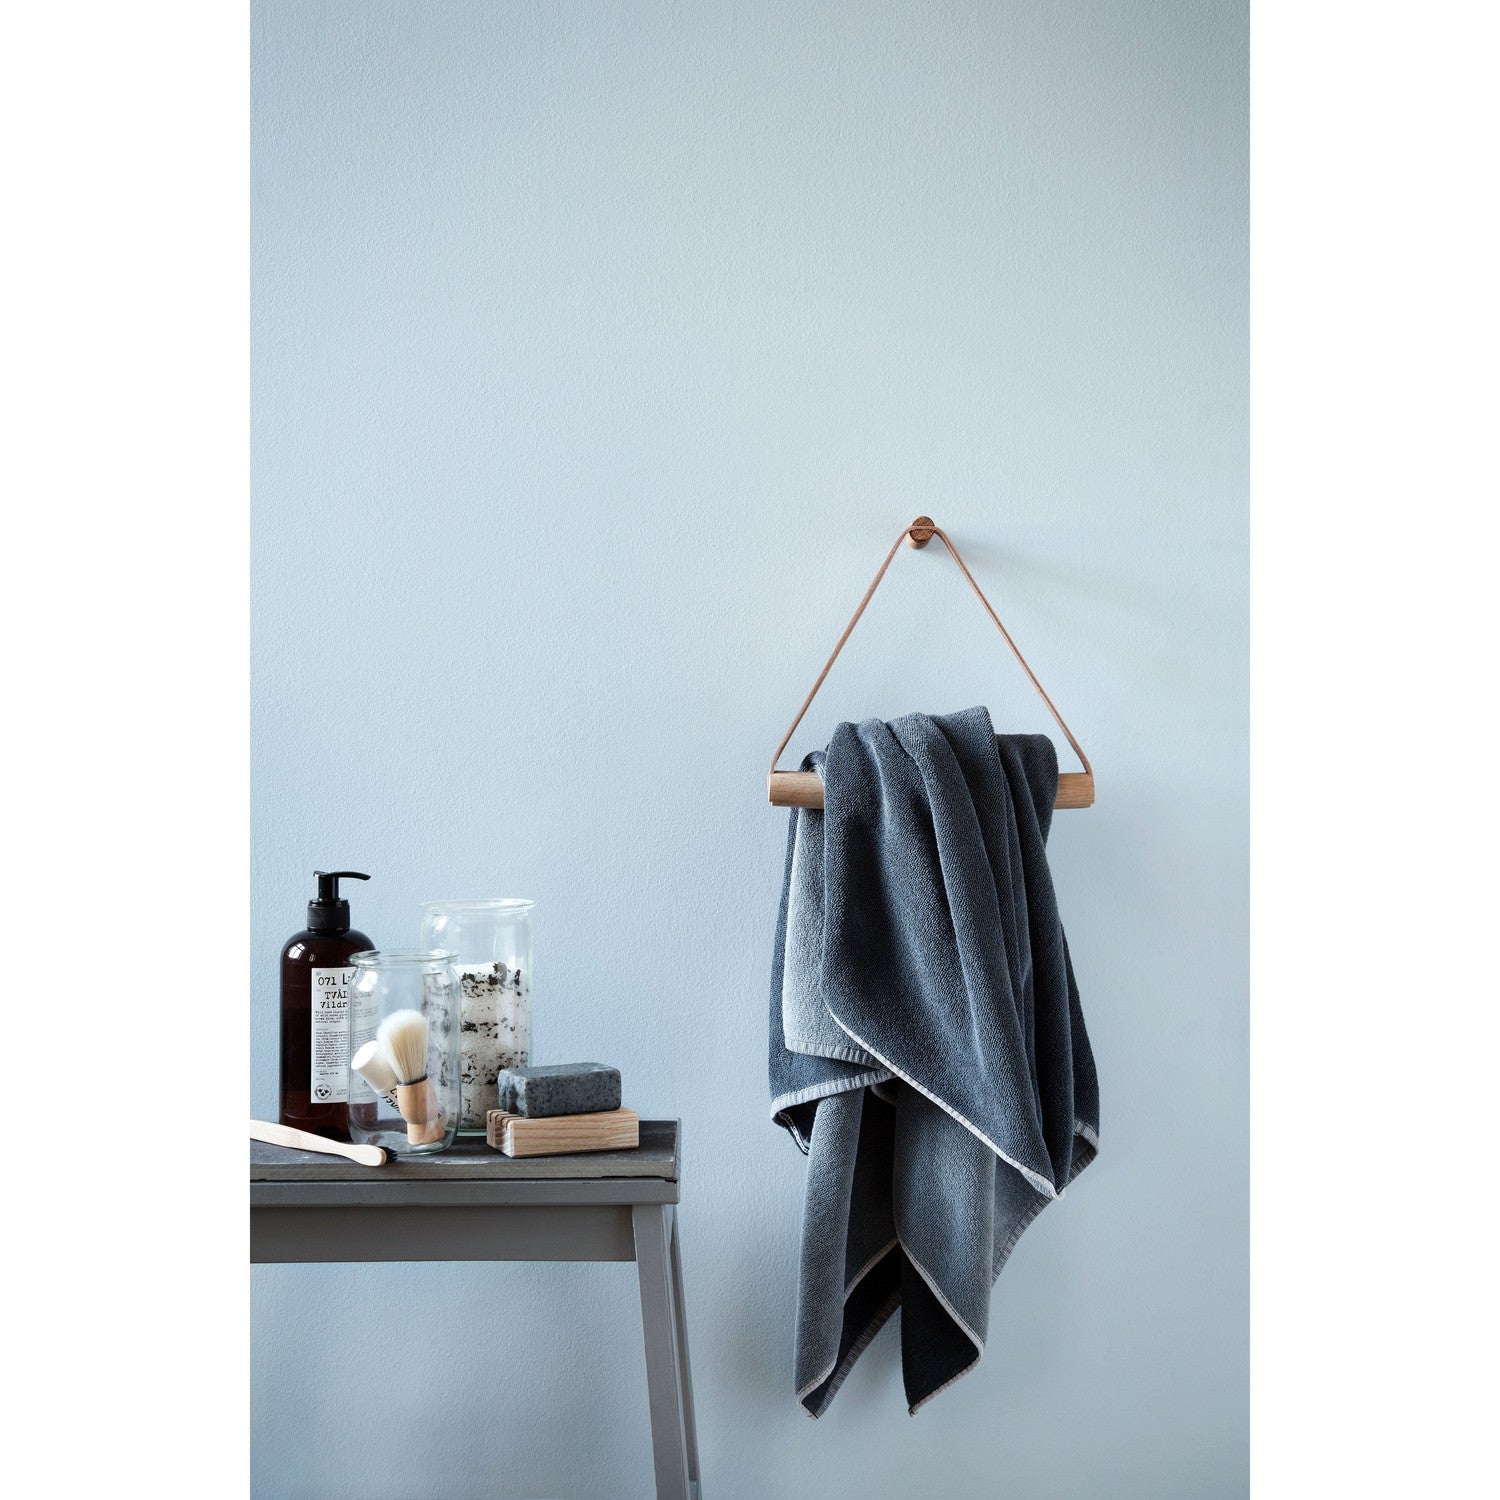 Towel Hanger Handdukshängare - Oljad Ek-Handdukshängare-Ekta Living-peaceofhome.se